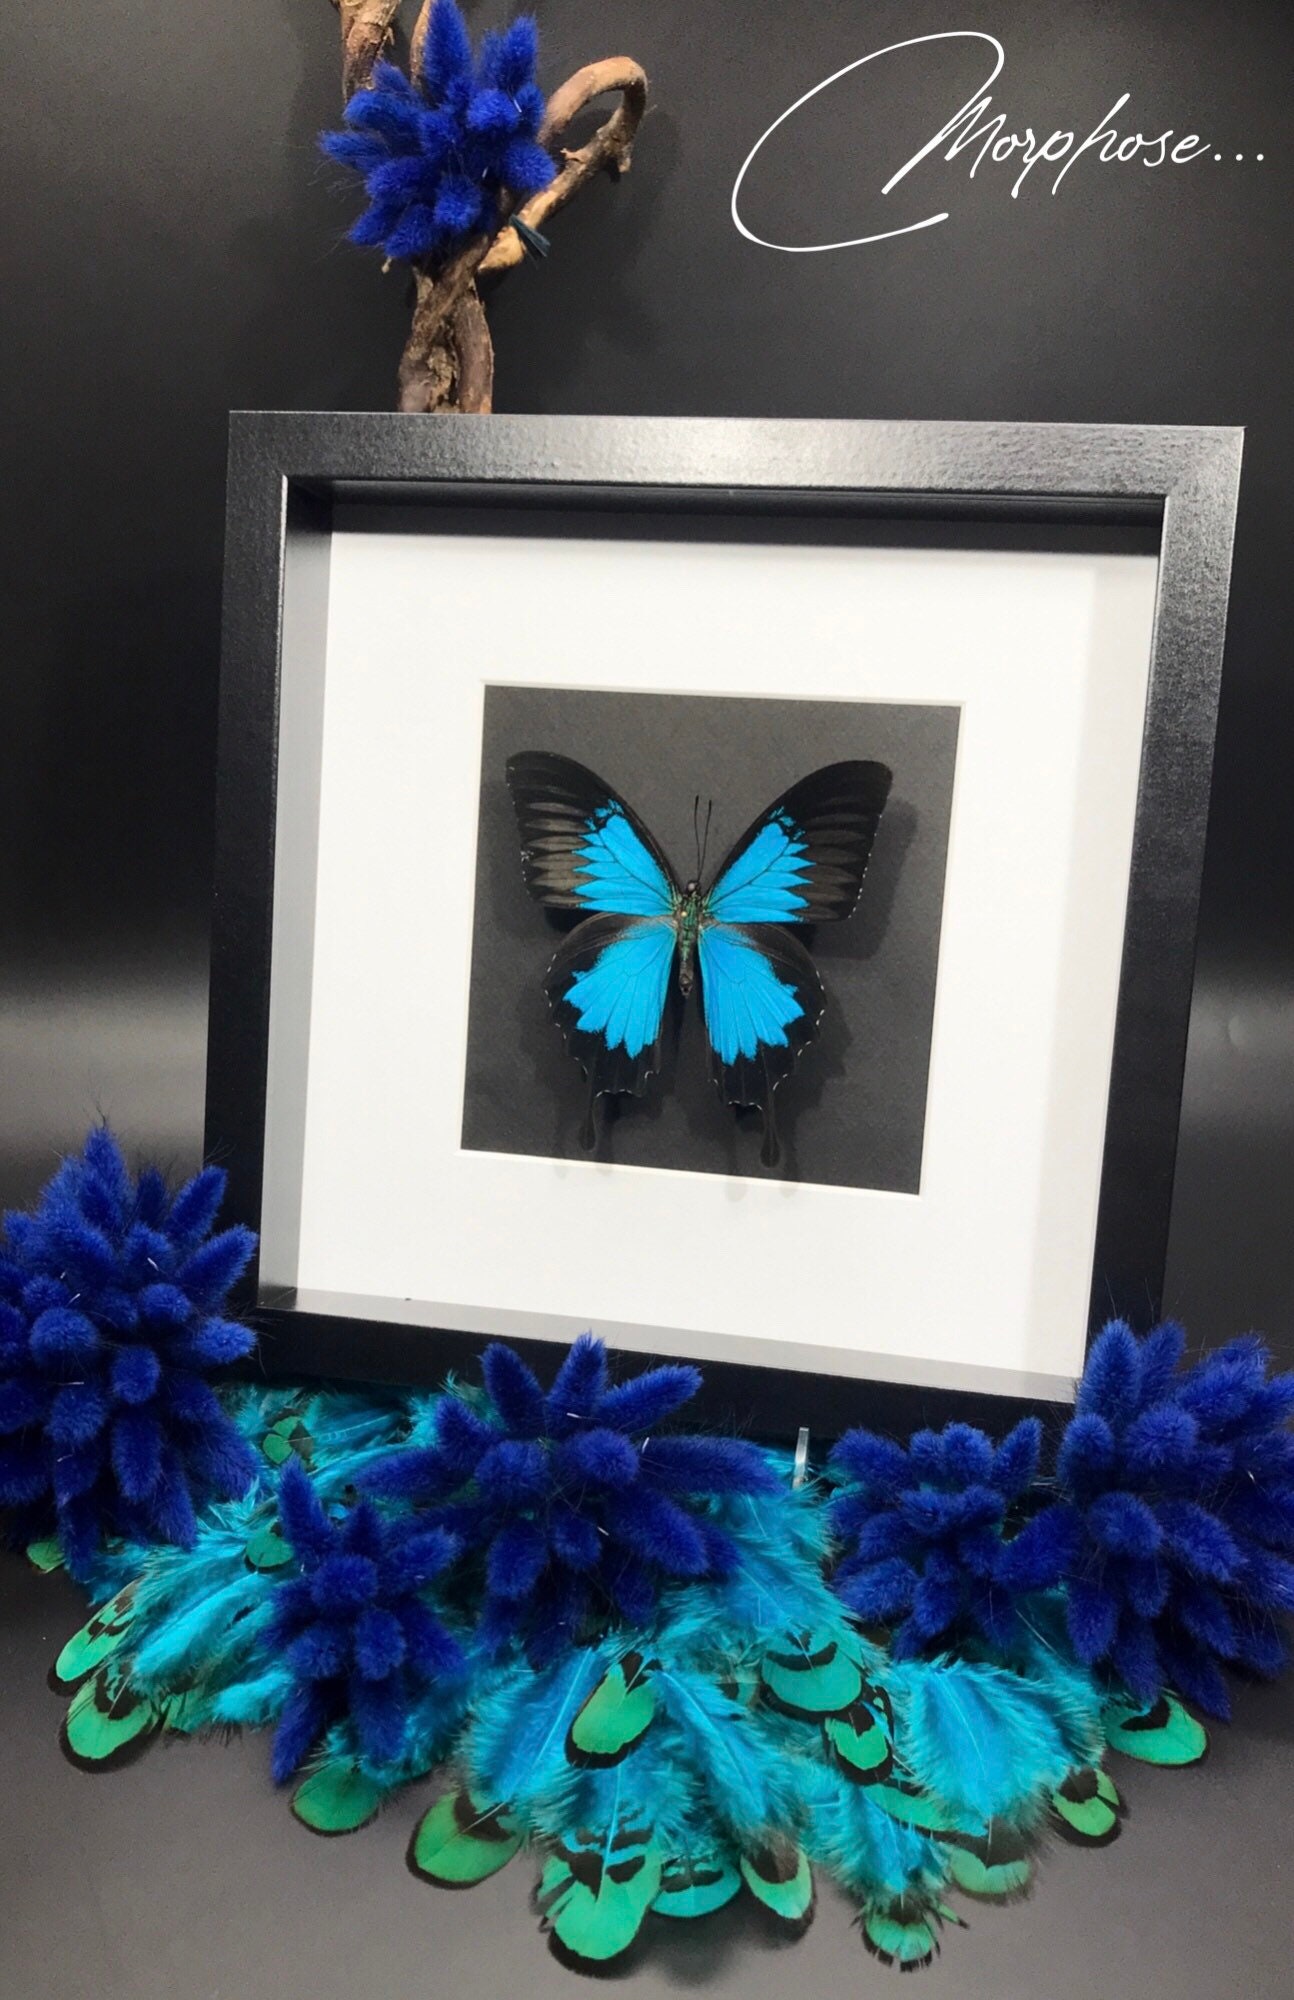 Magnifique Papillon Papilio Ulysses Naturalisé Sous Cadre Vitrine. Décoration Pour Cabinet de Curios